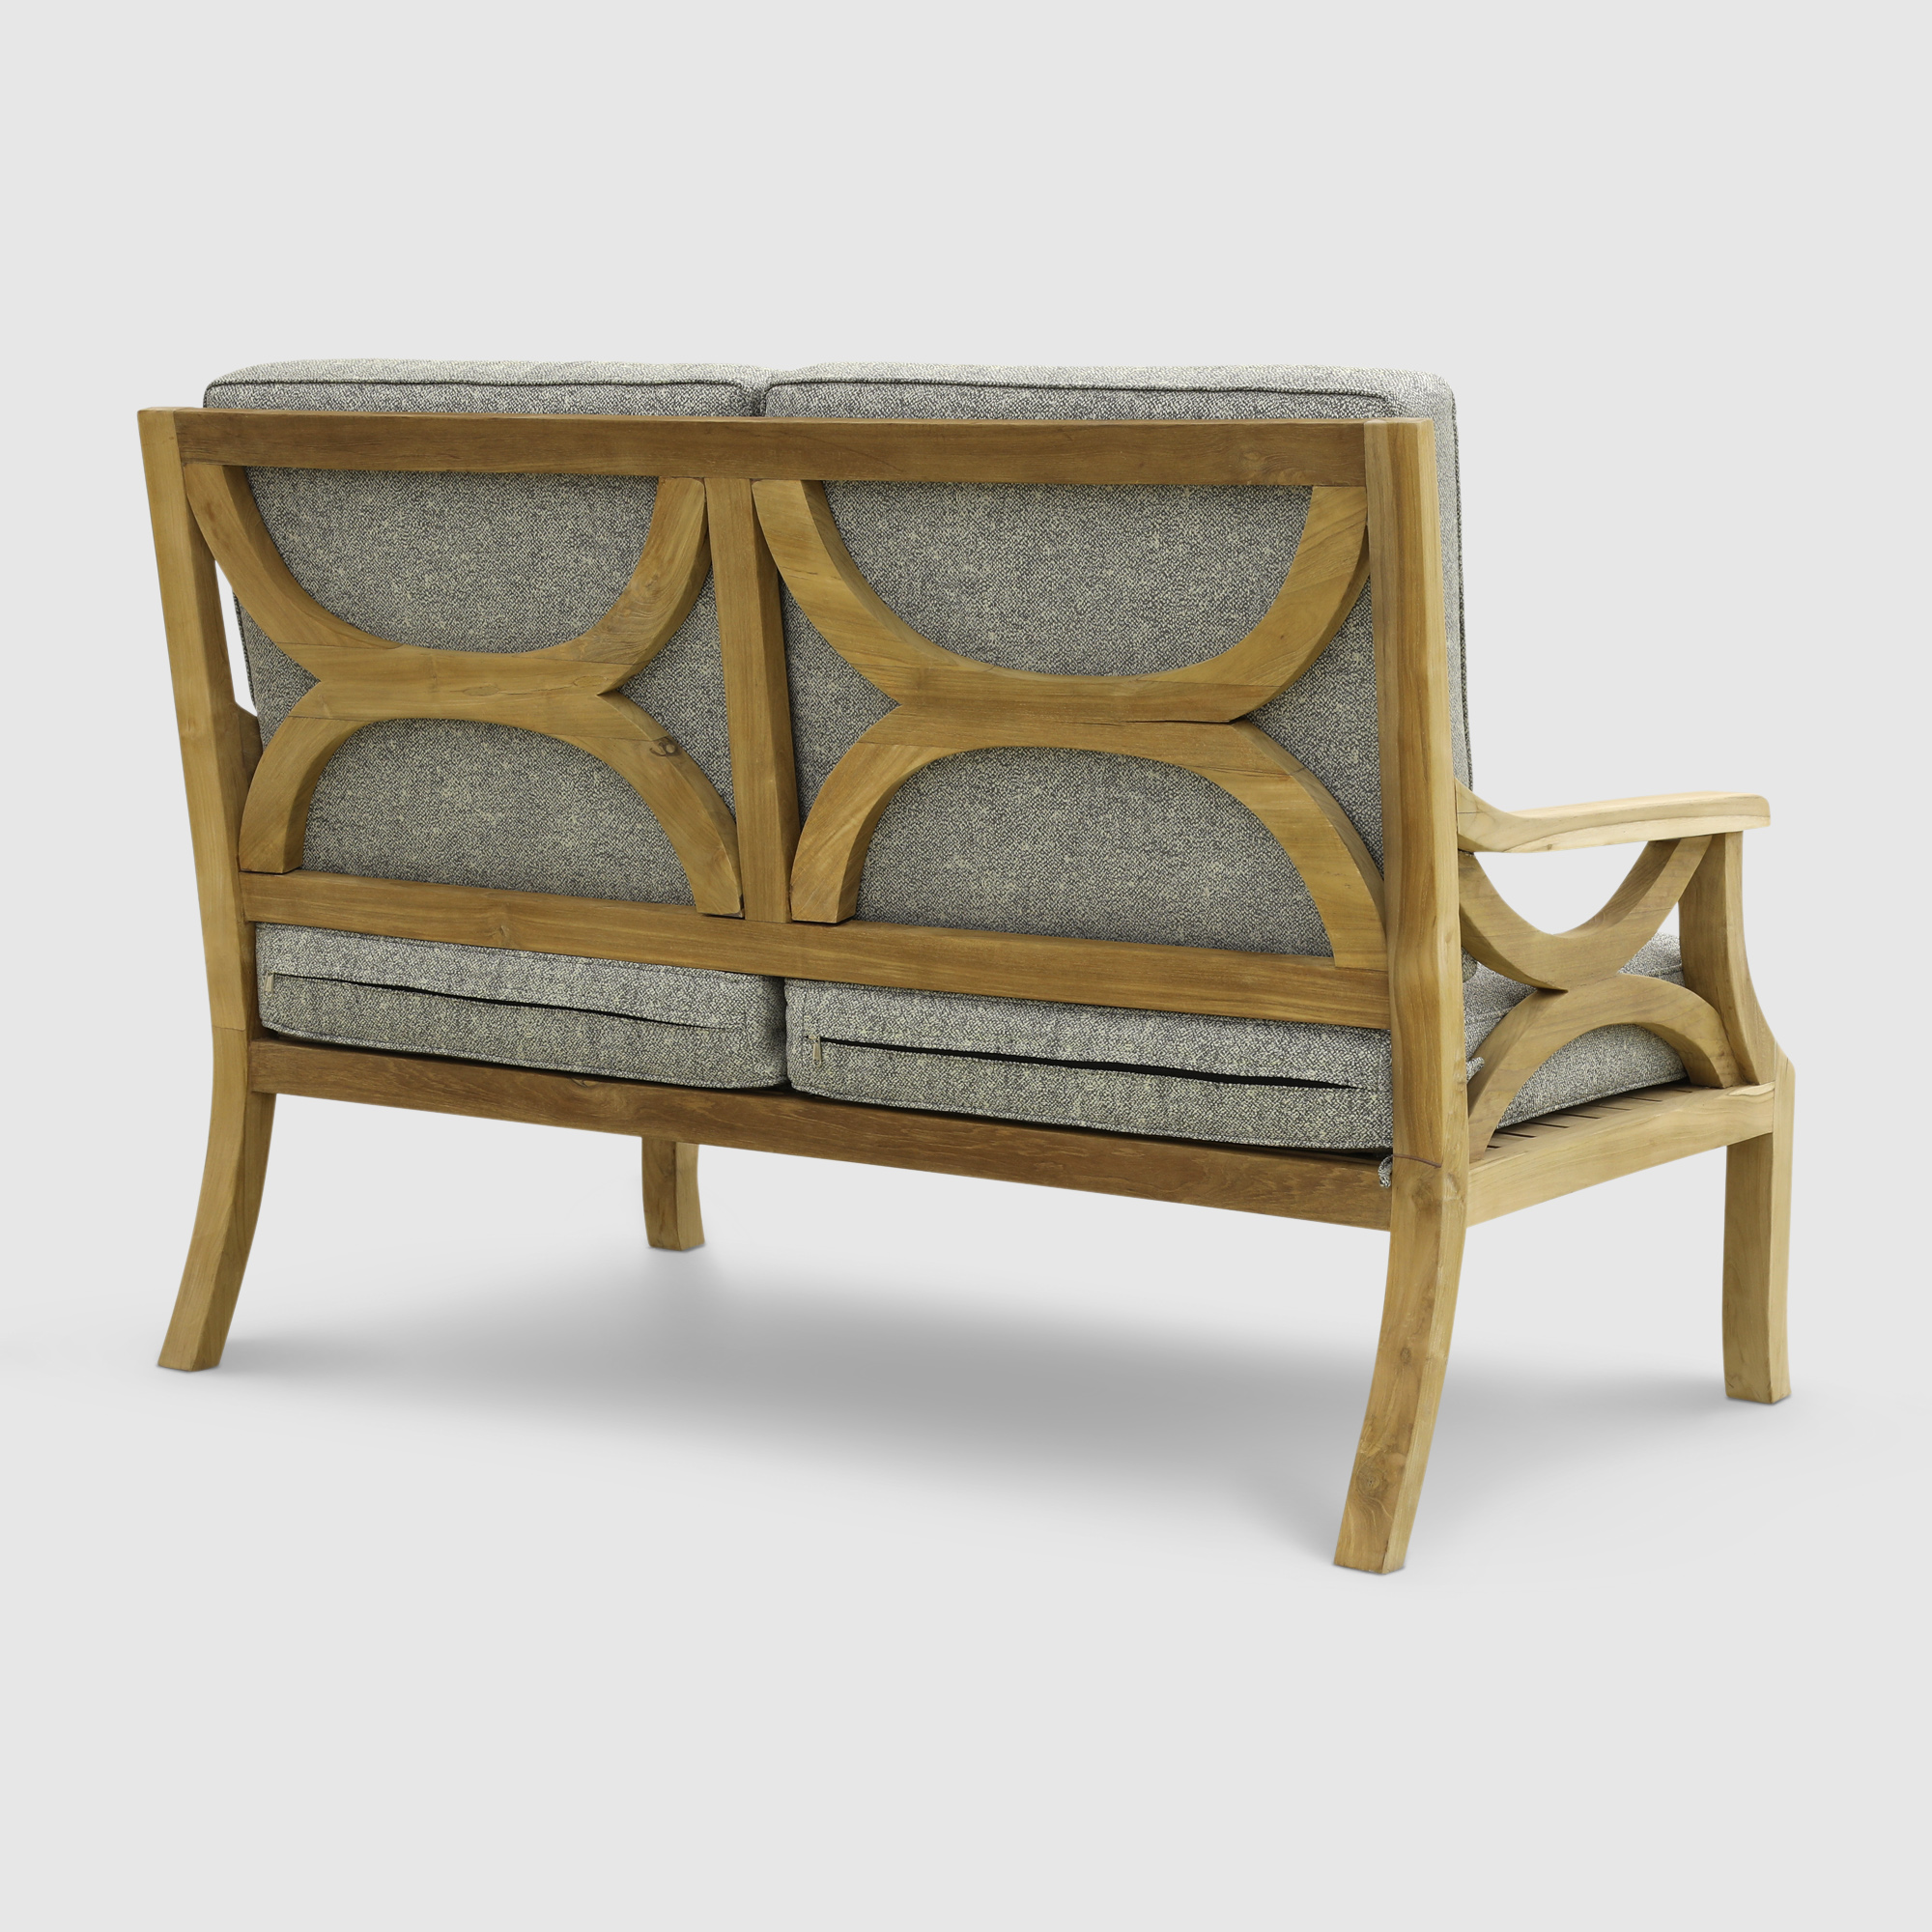 Комплект мебели Jepara Valeria с 2-х местными диванами 5 предметов, цвет светлое дерево, размер 138х75х92 - фото 4